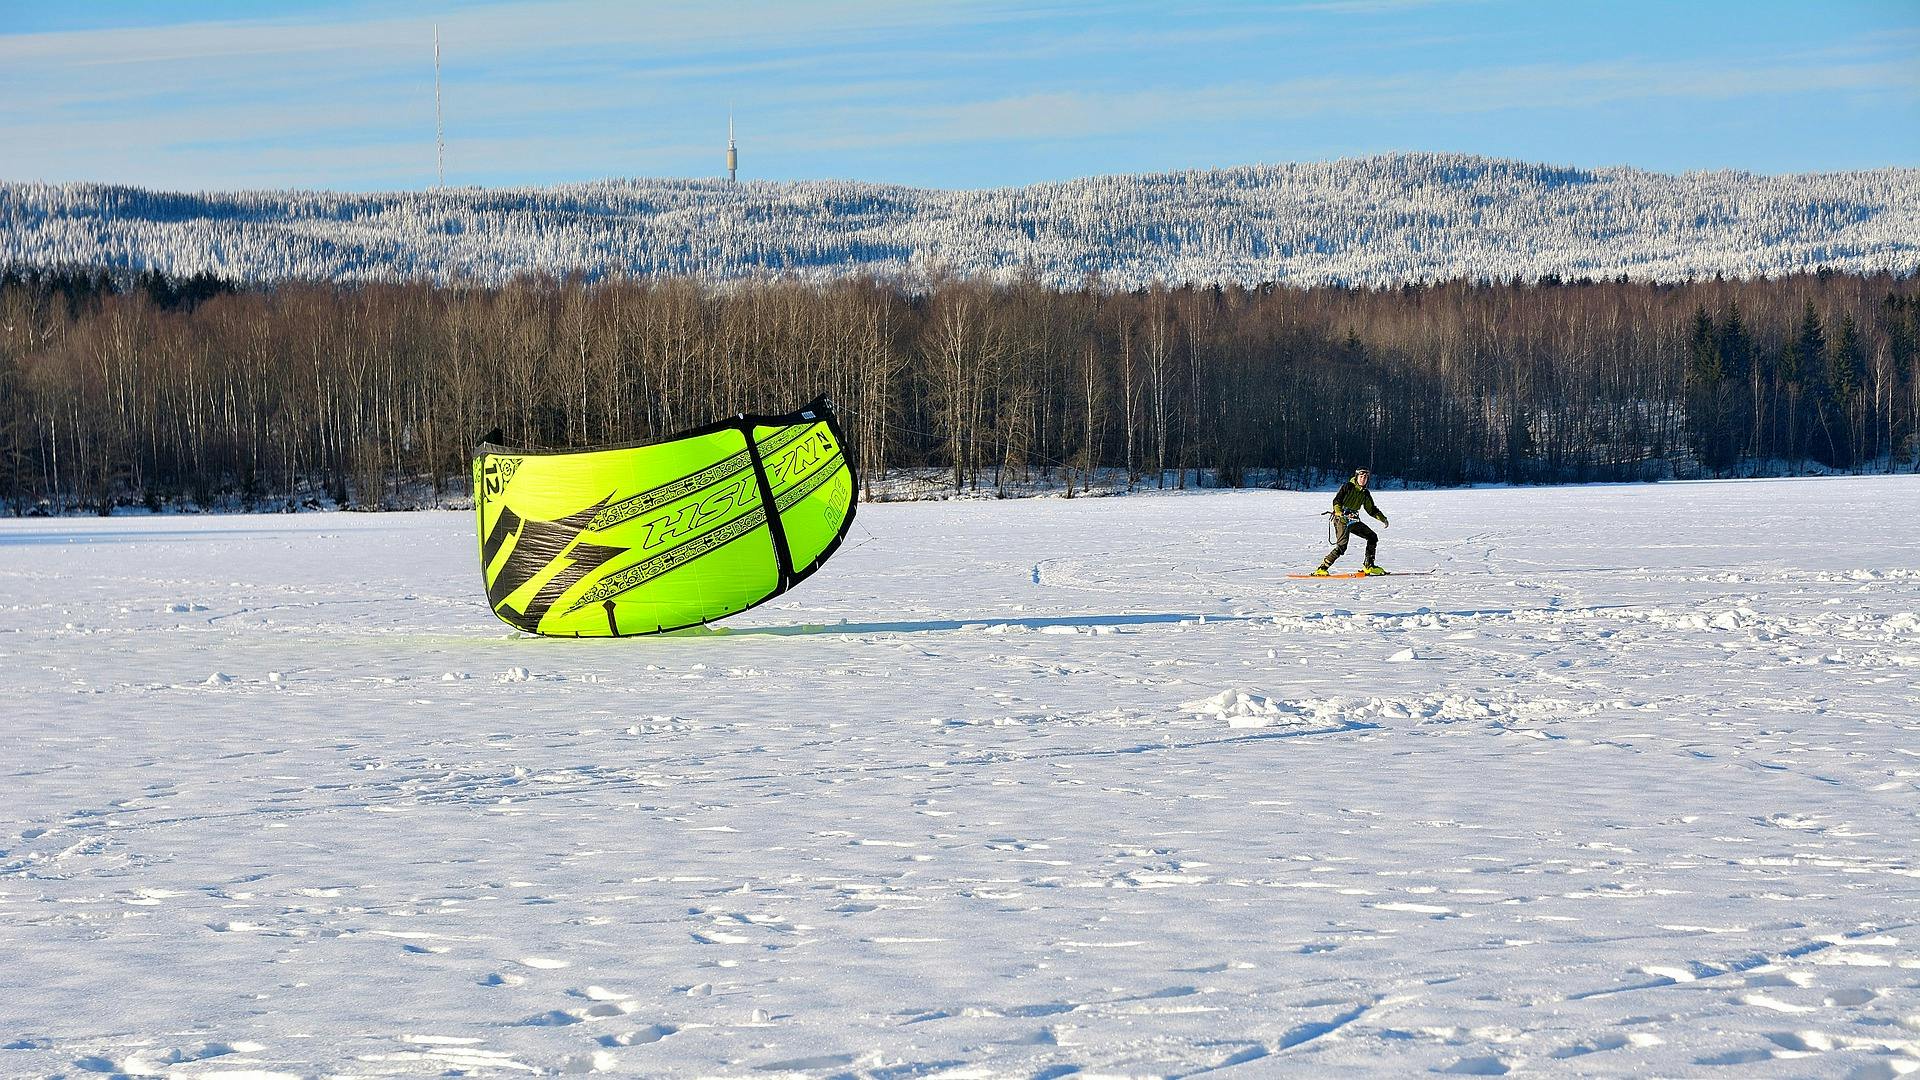 Snow kite gear